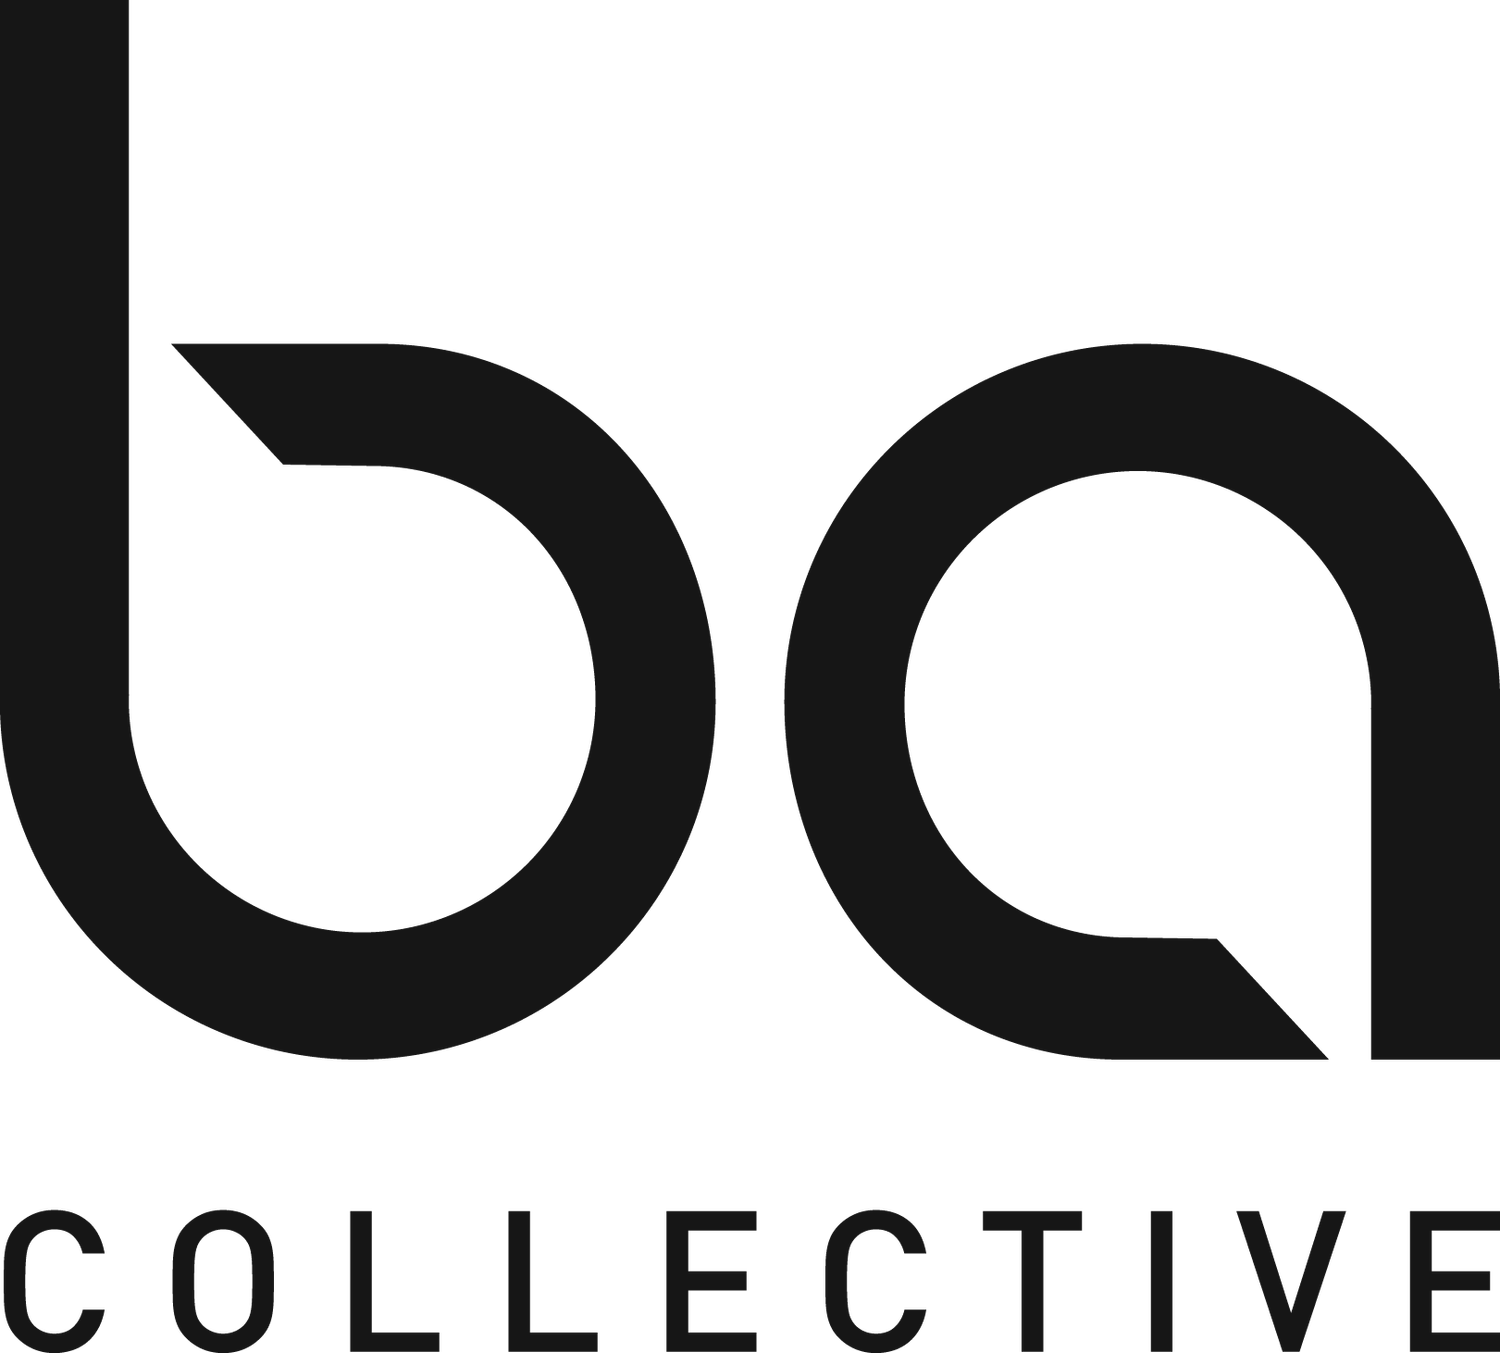 BA Collective